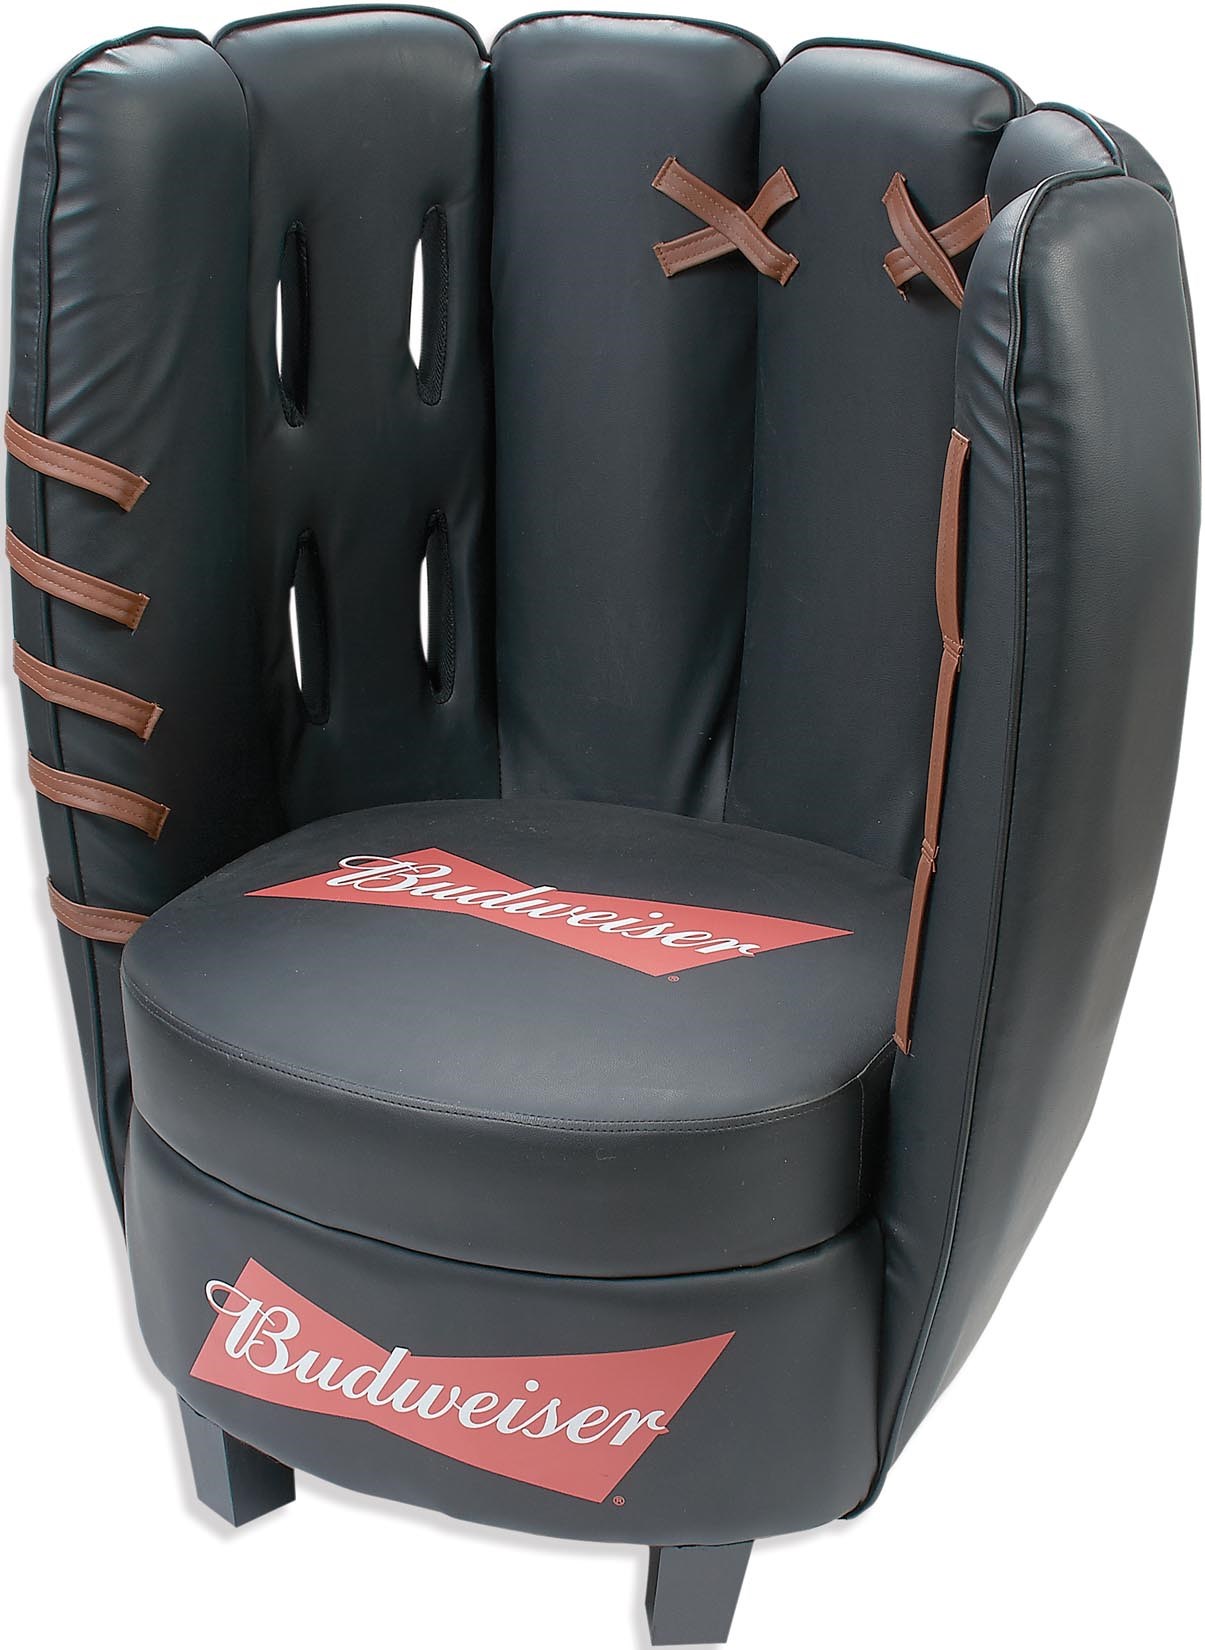 Baseball Memorabilia - Giant Budweiser Beer Promotional Baseball Glove Chair